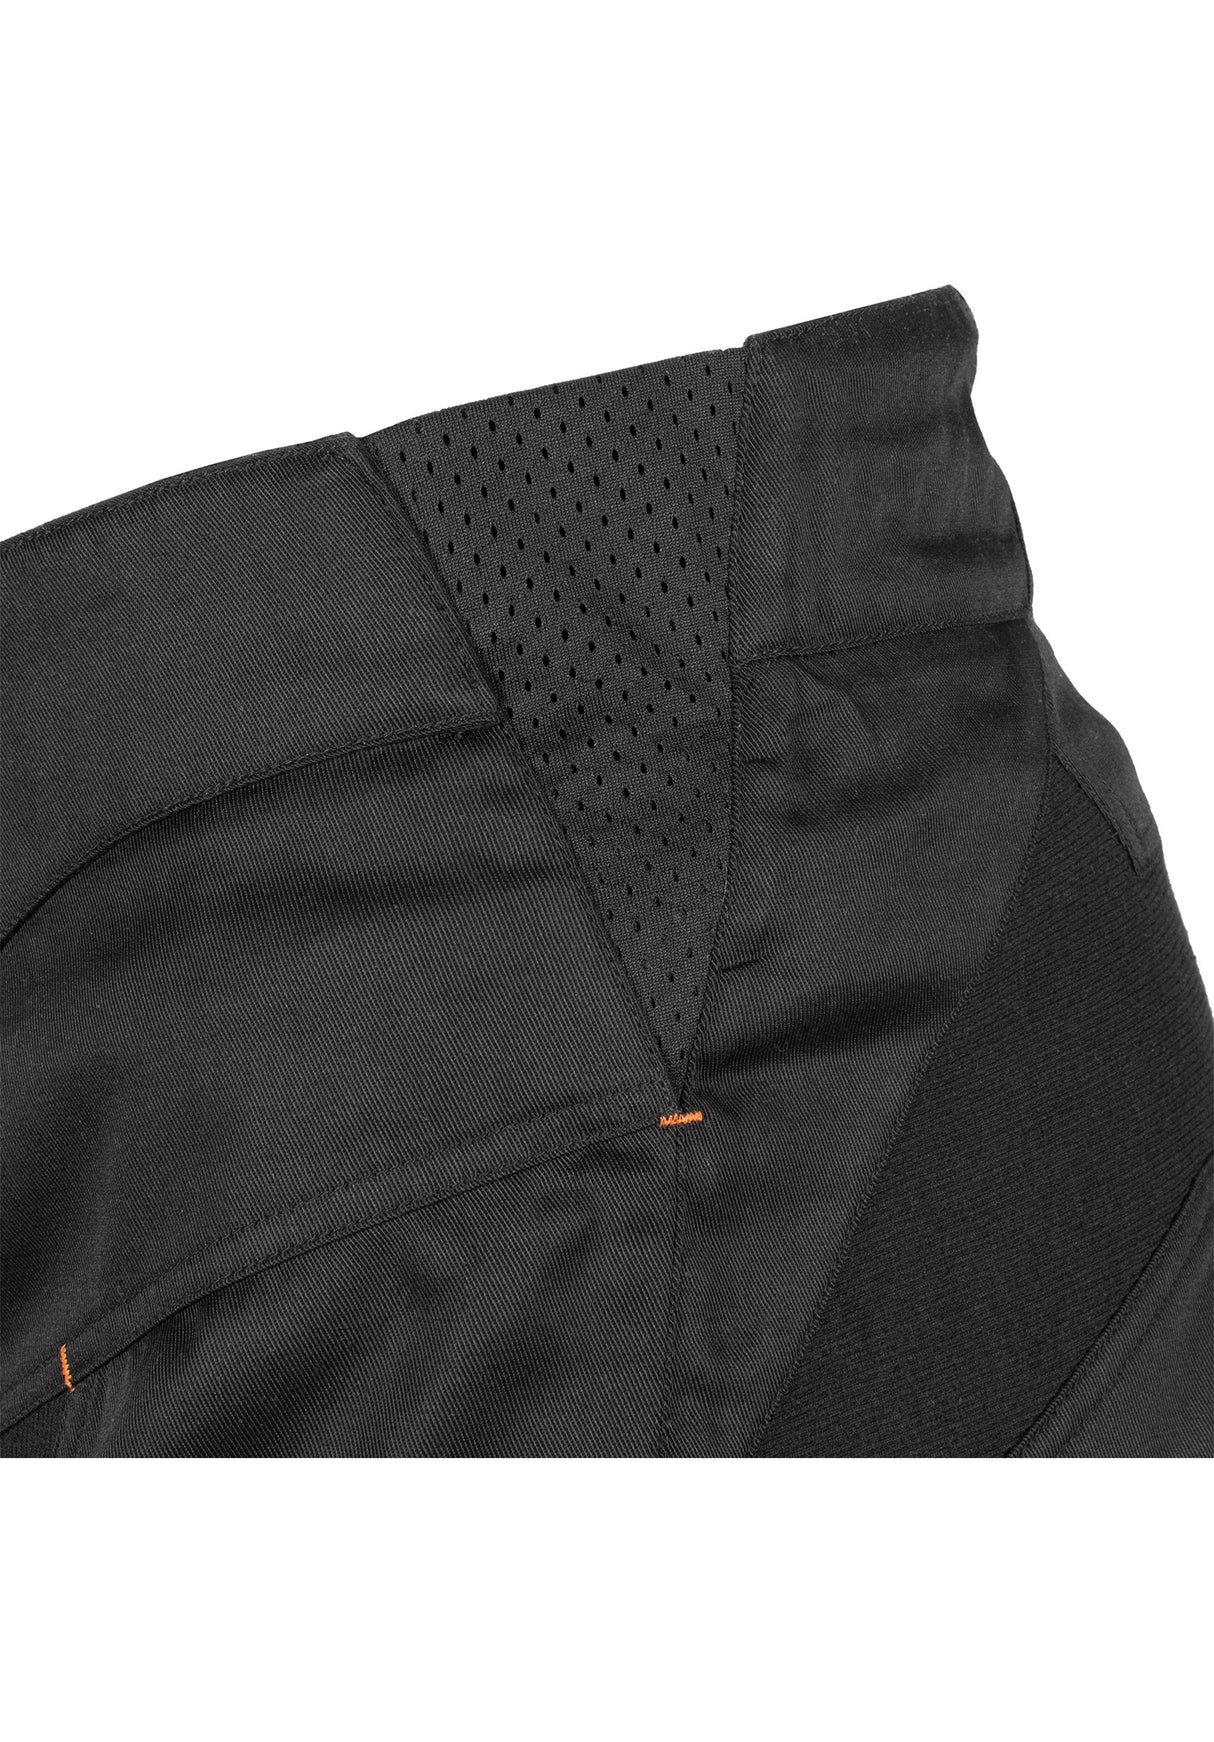 Worx Shorts black-orange Close-Up2